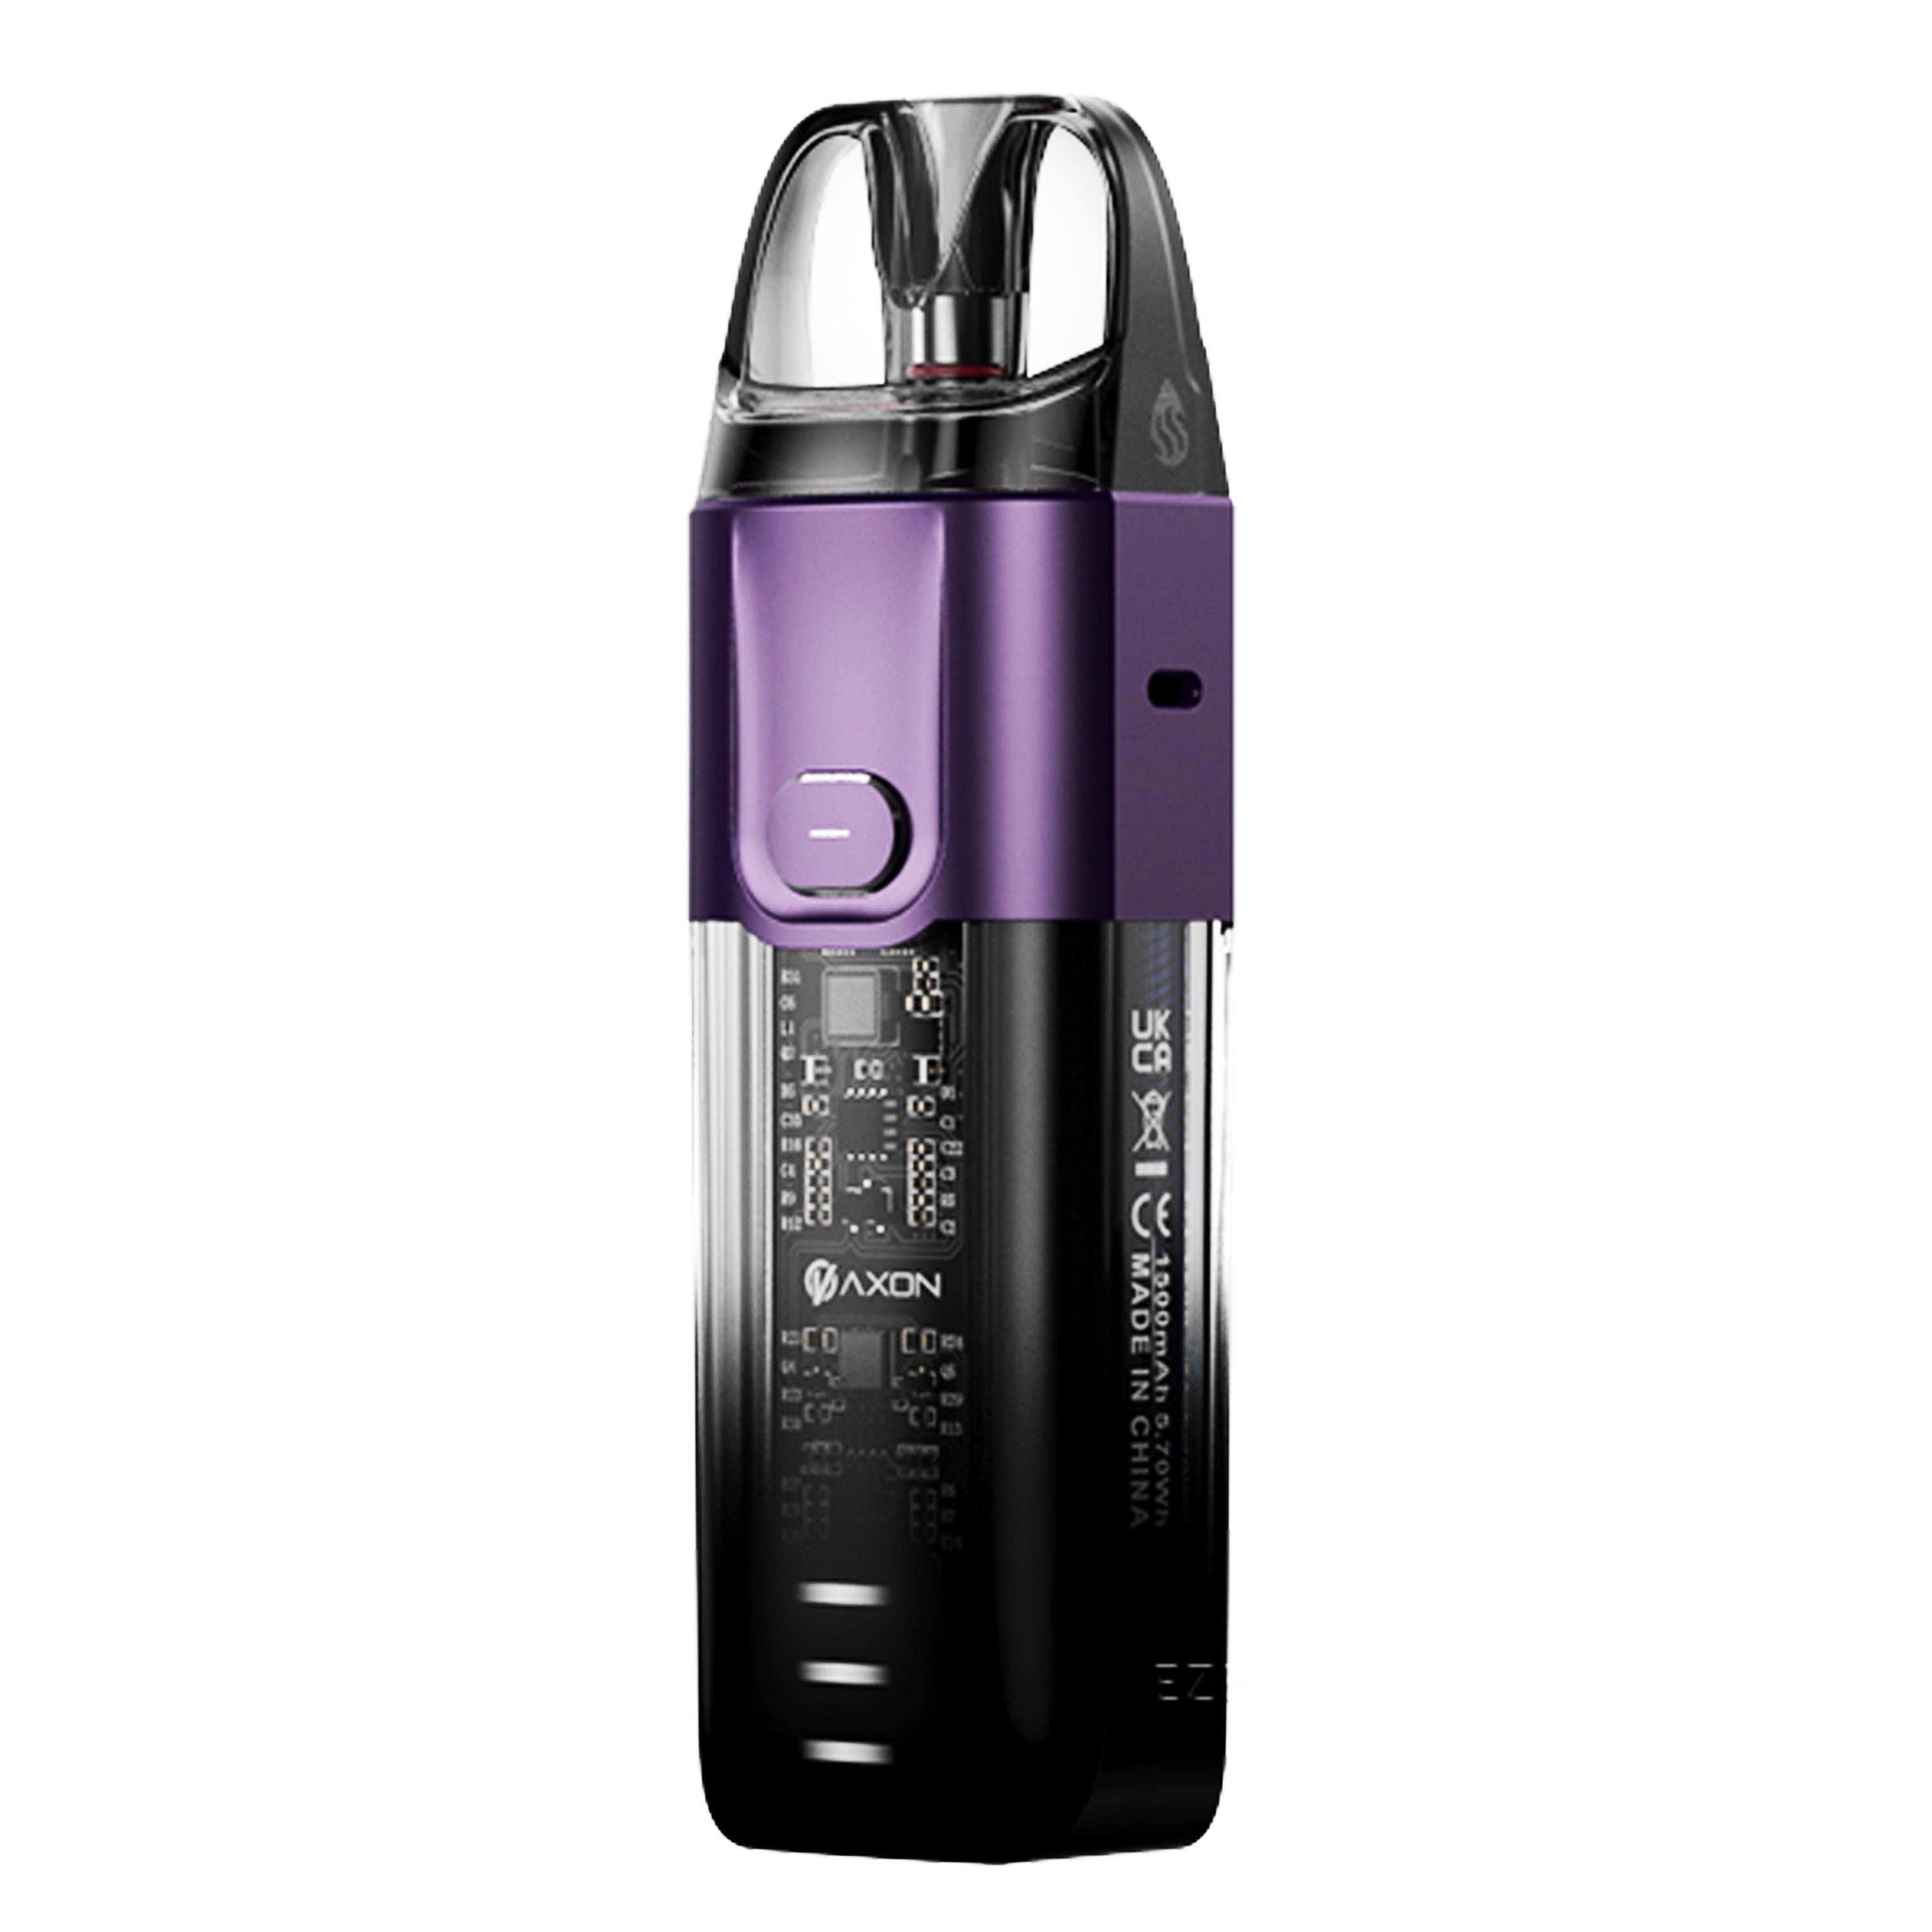 Vaporesso - Luxe X Kit (5 ml) 1500 mAh - E-Zigarette